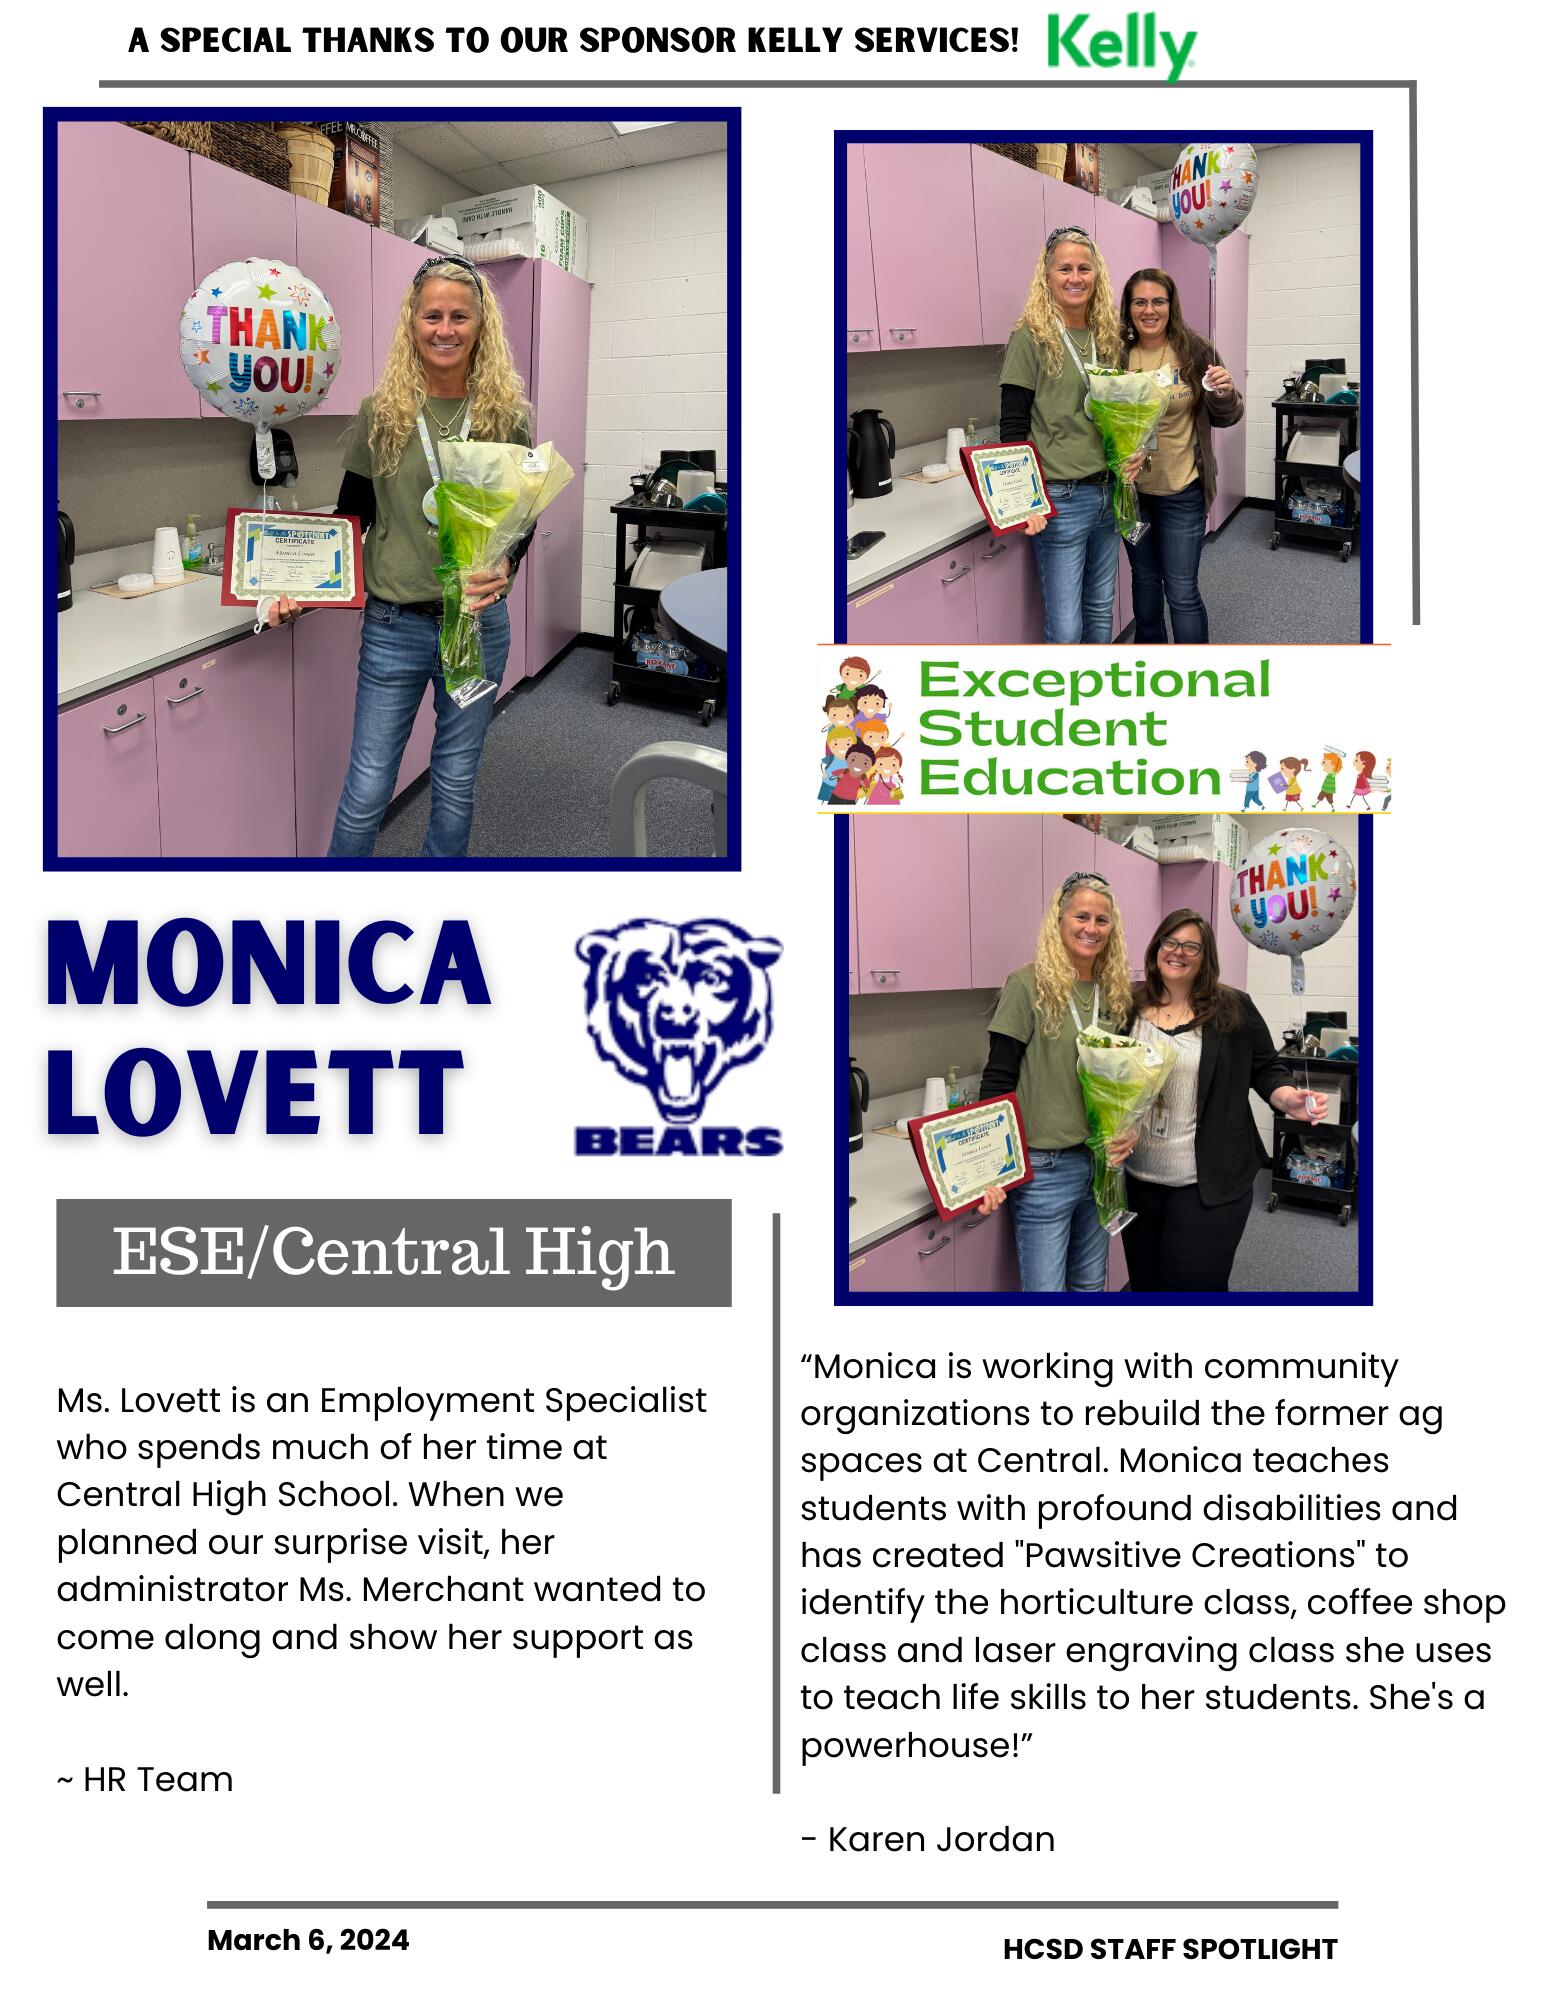 Staff Spotlight on Monica Lovett